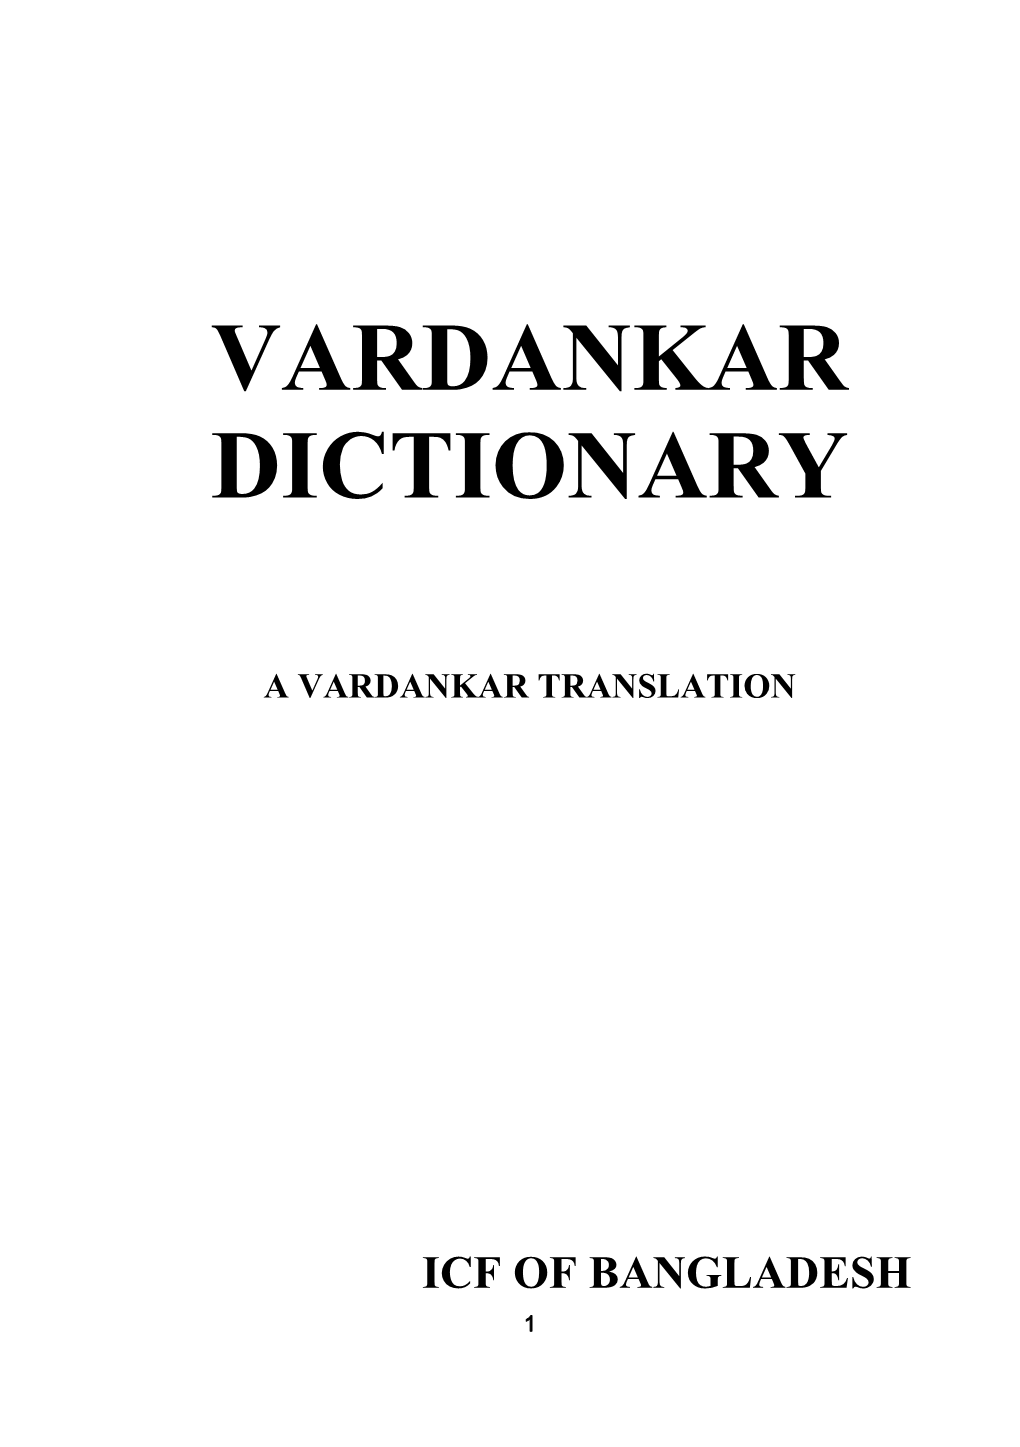 Vardankar Dictionary